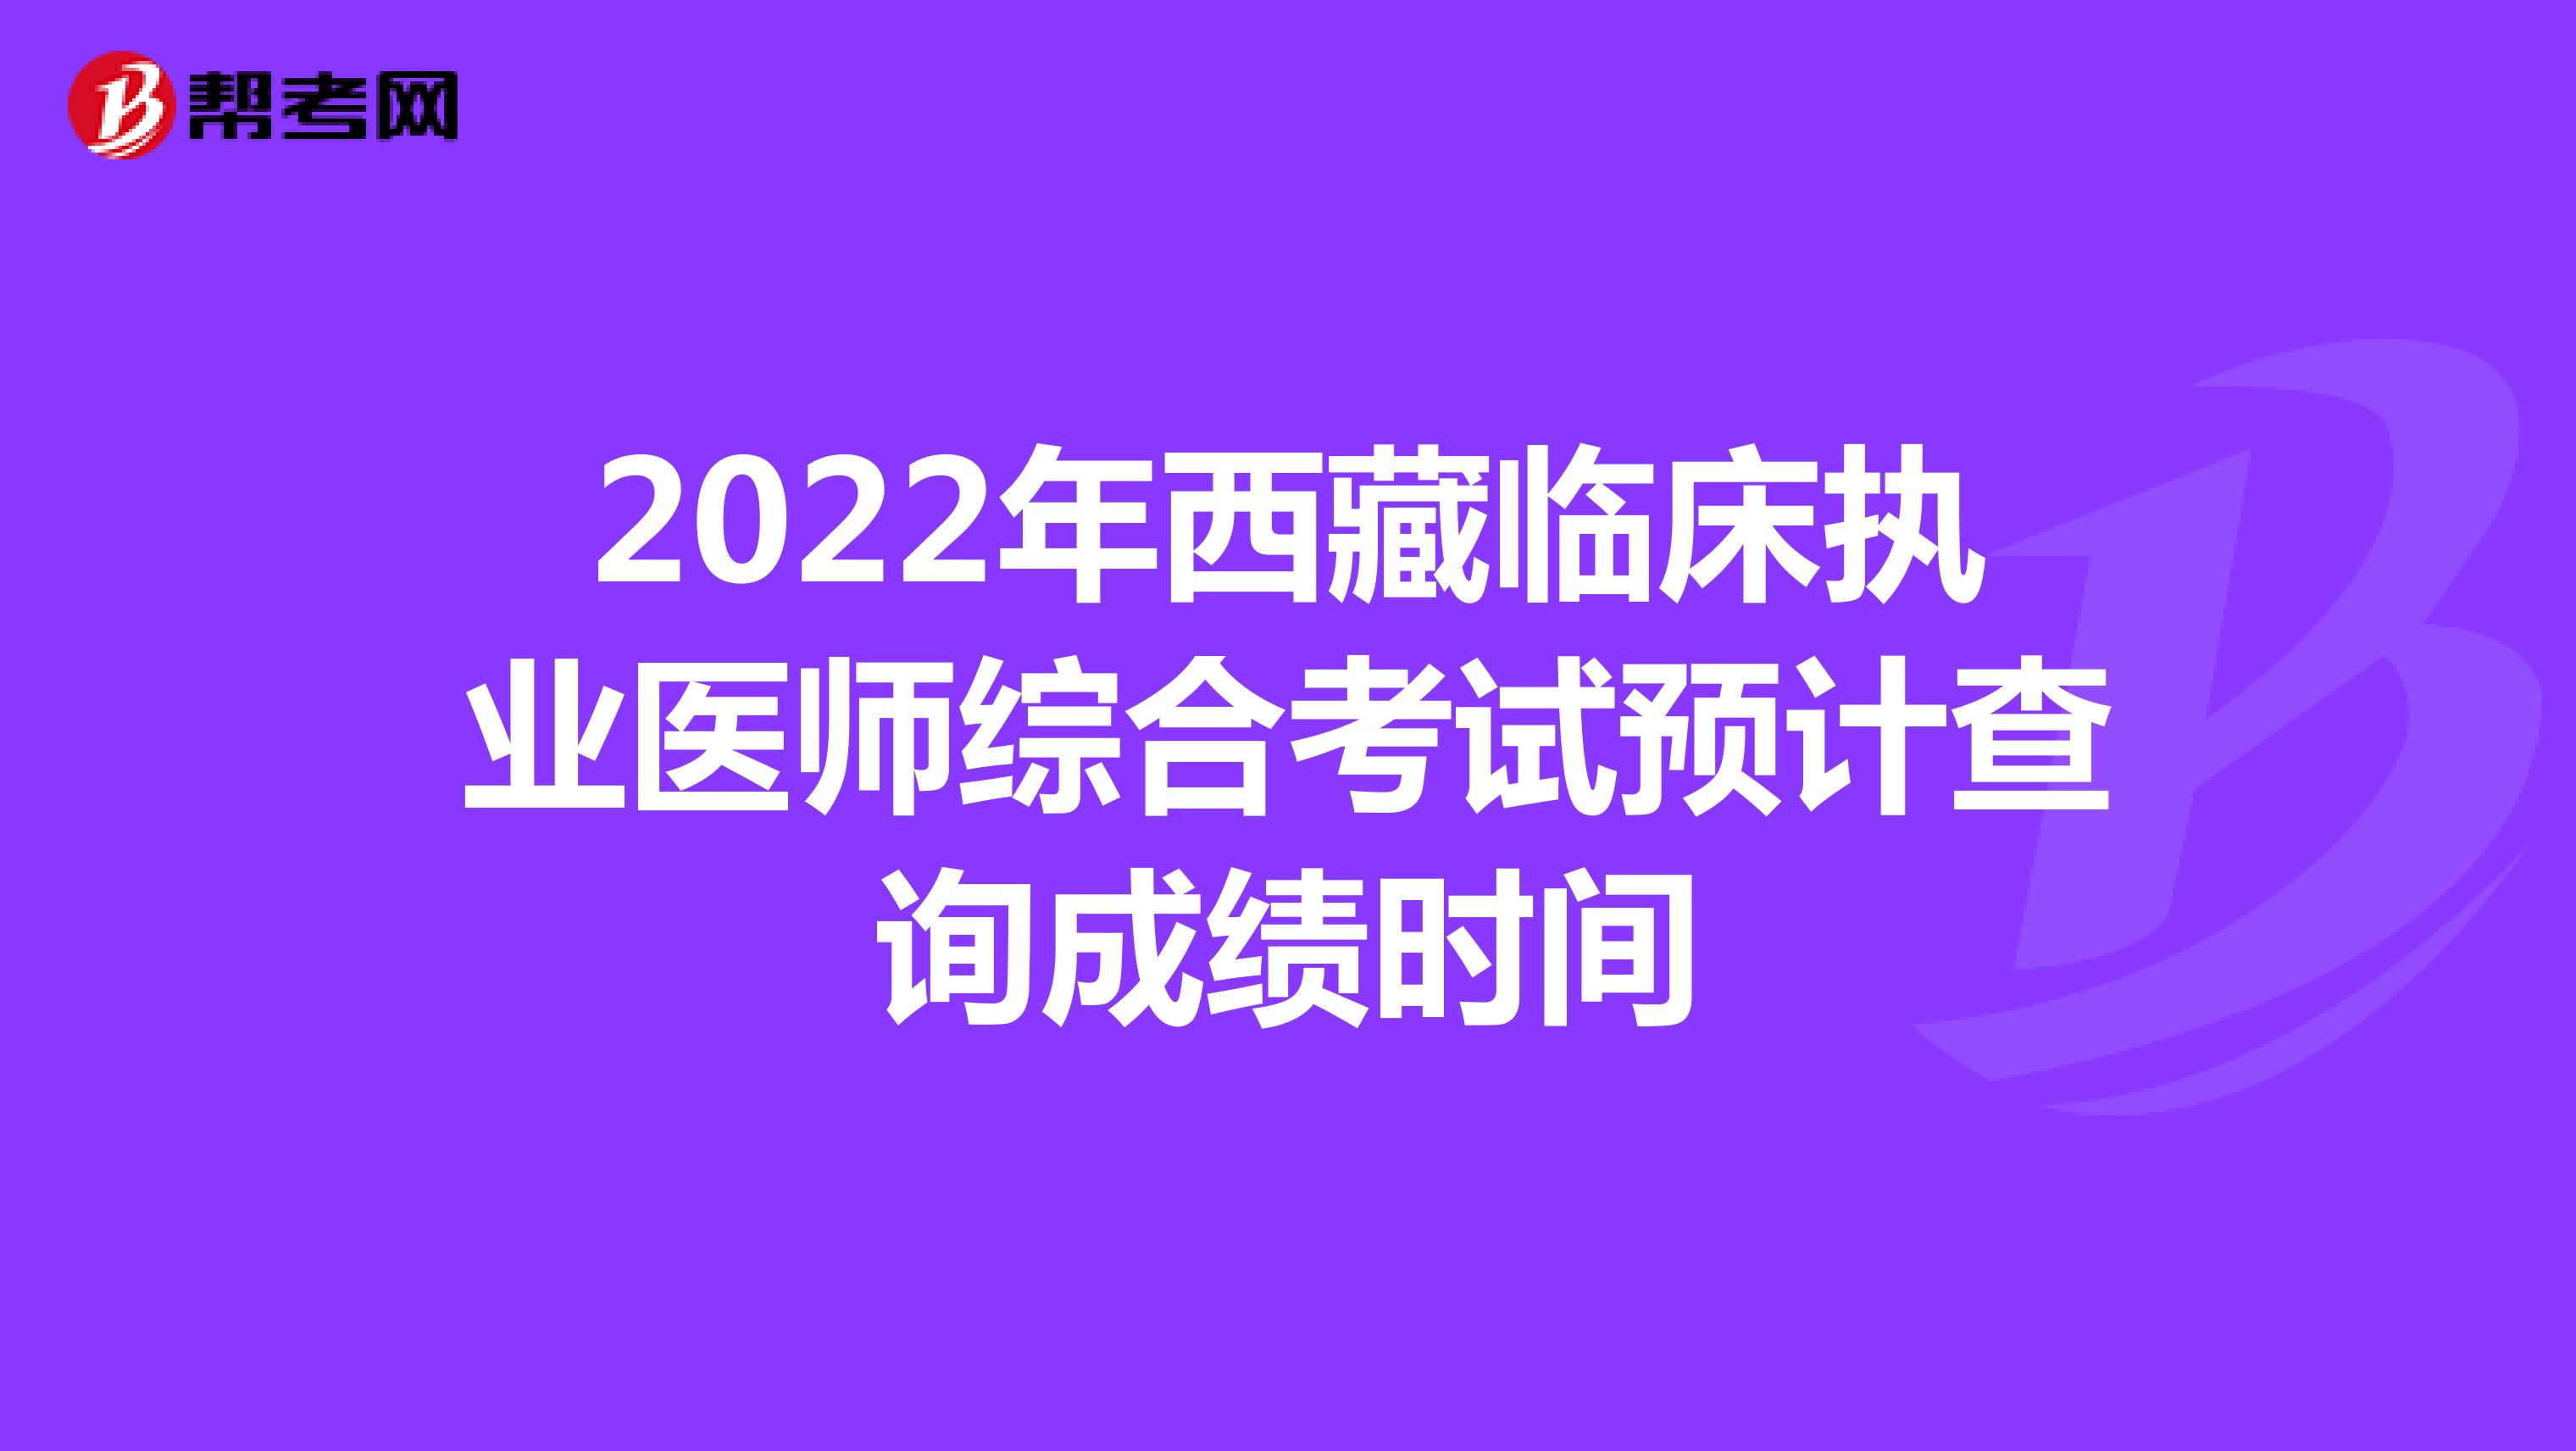 2022年西藏临床执业医师综合考试预计查询成绩时间